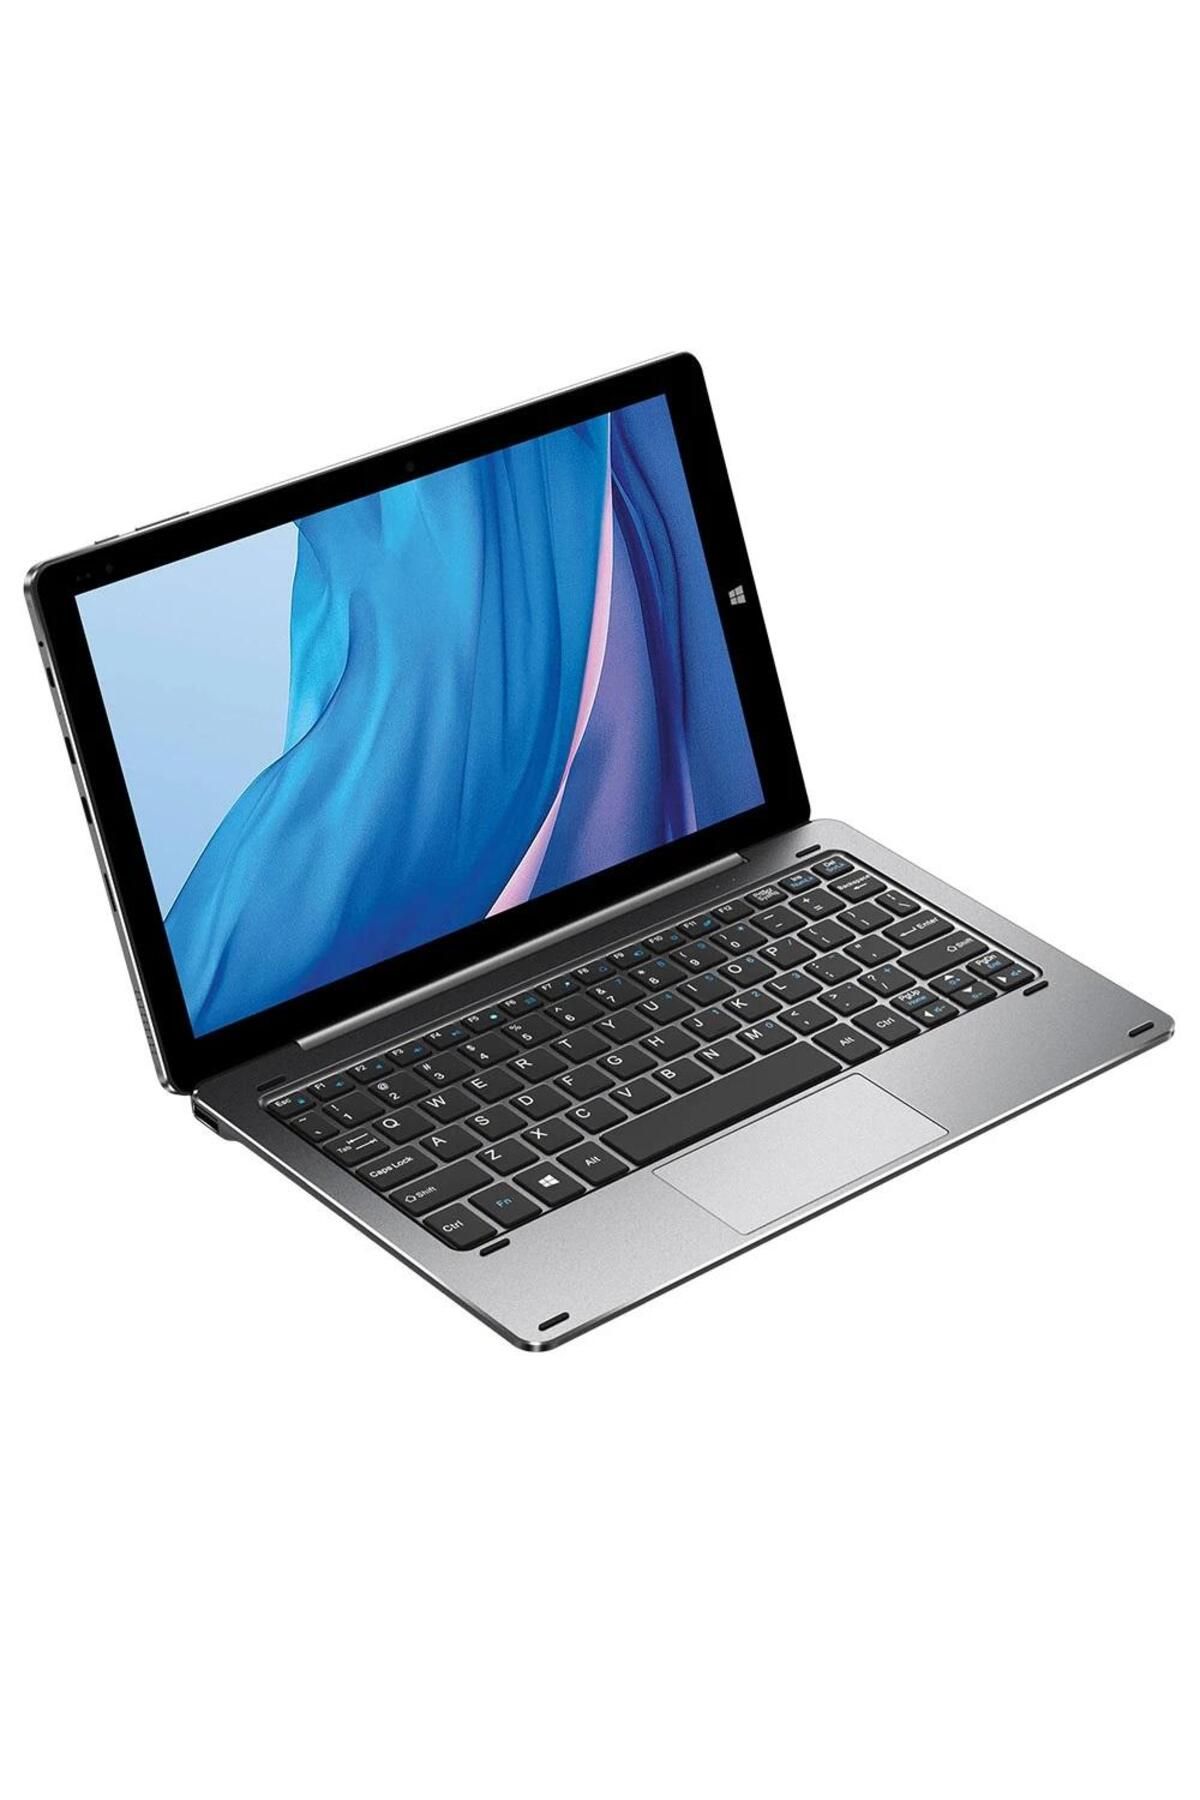 FOSILAVM 10.1 inç 6GB RAM 128GB ROM Windows 11 Tabletpc Manyetik Klavye Hediyedir.